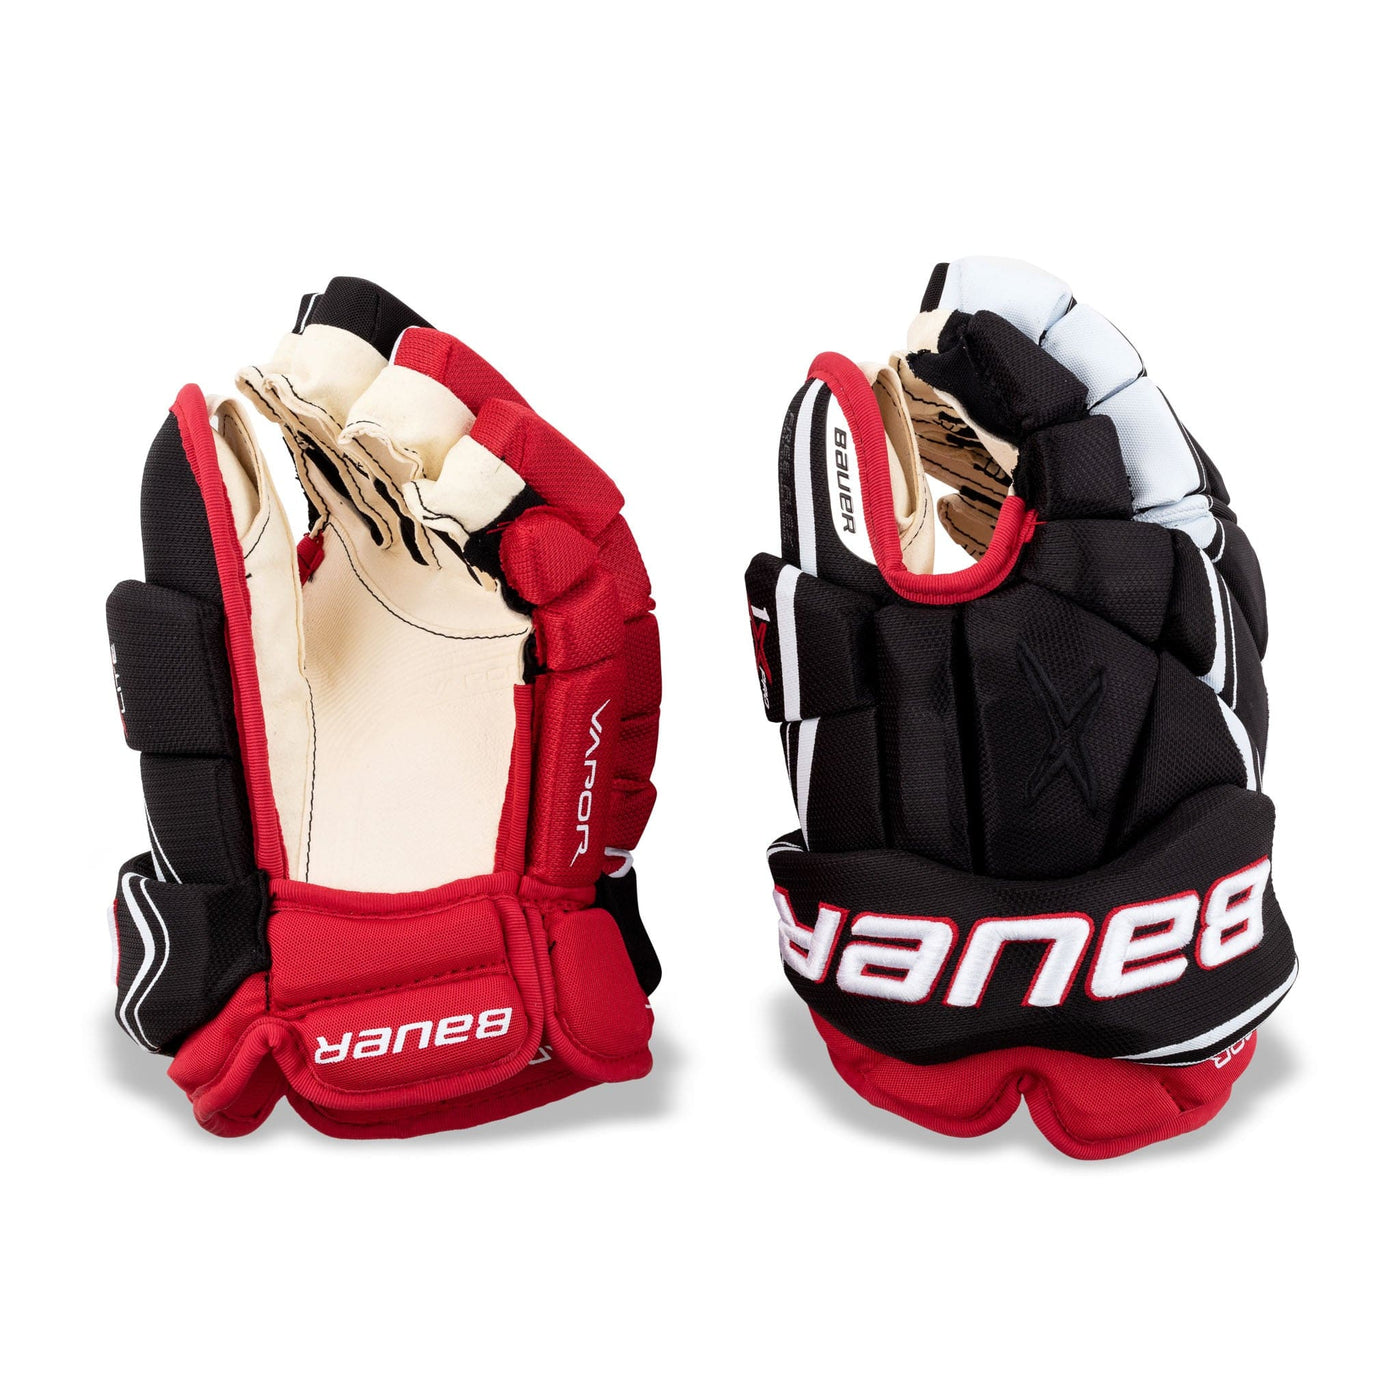 Bauer Vapor 1X Lite Pro Senior Hockey Gloves